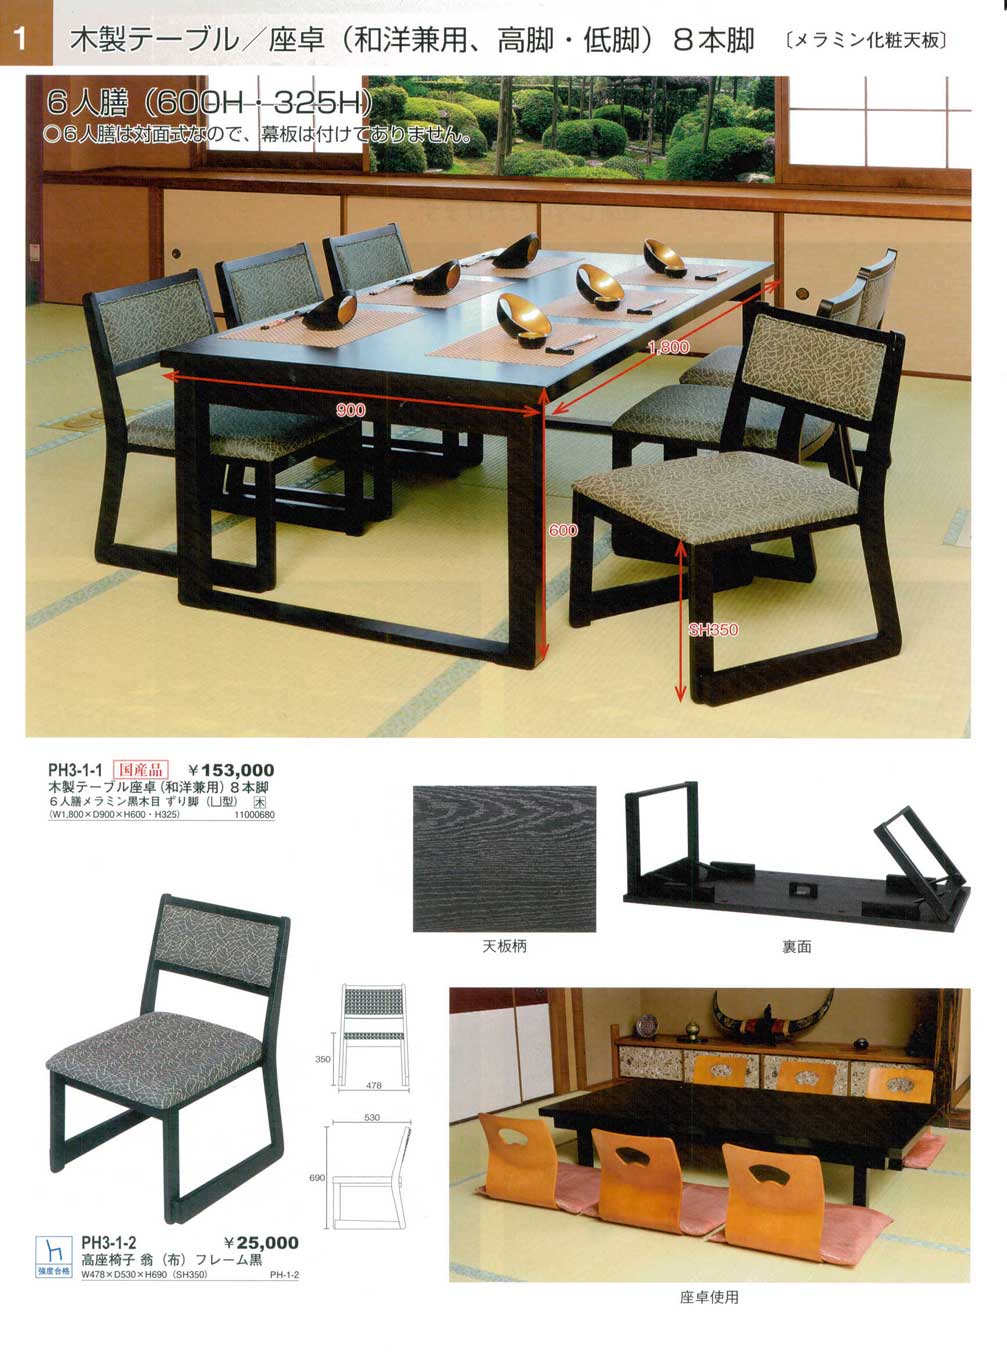 テーブル 格子脚型テーブル メラミン黒木目 [180 x 75 x H70cm] 木製品 (7-763-1) 料亭 旅館 和食器 飲食店 業務用  センターテーブル